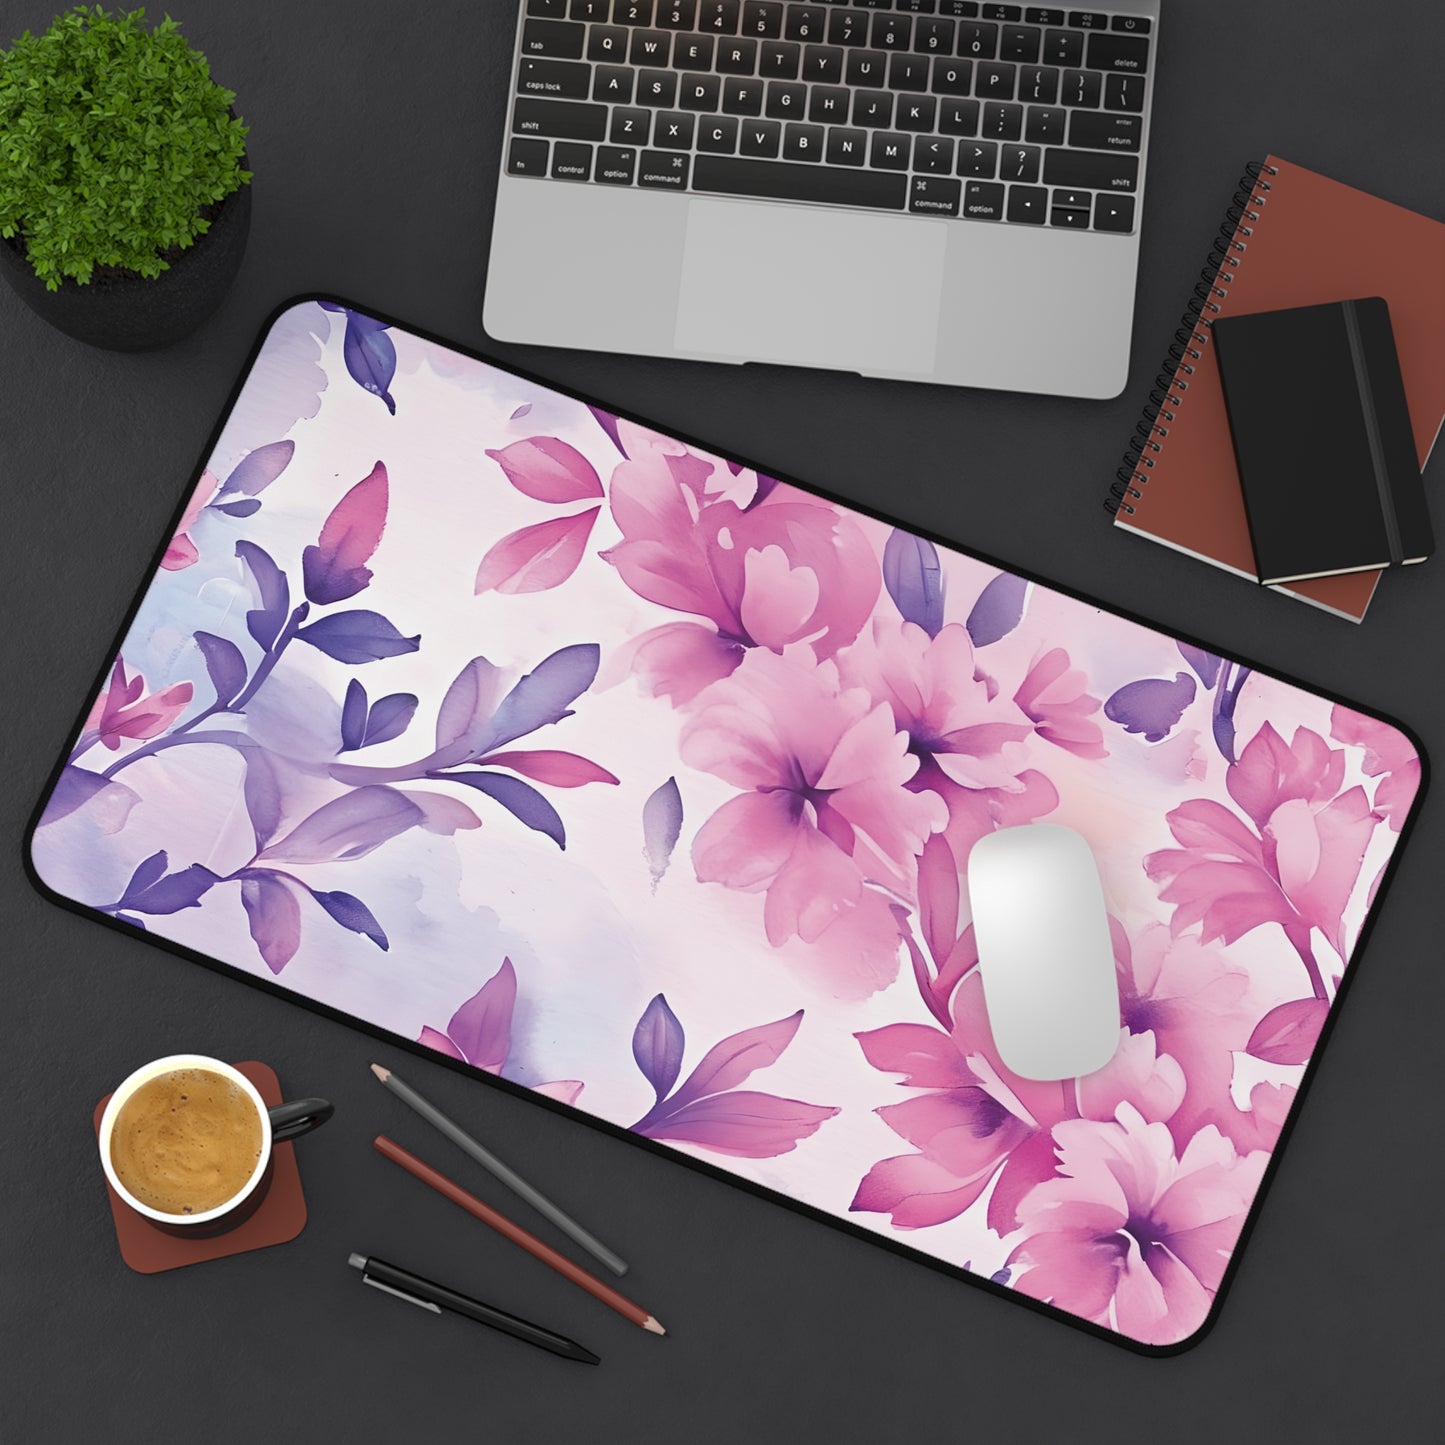 Watercolor Floral Desk Mat